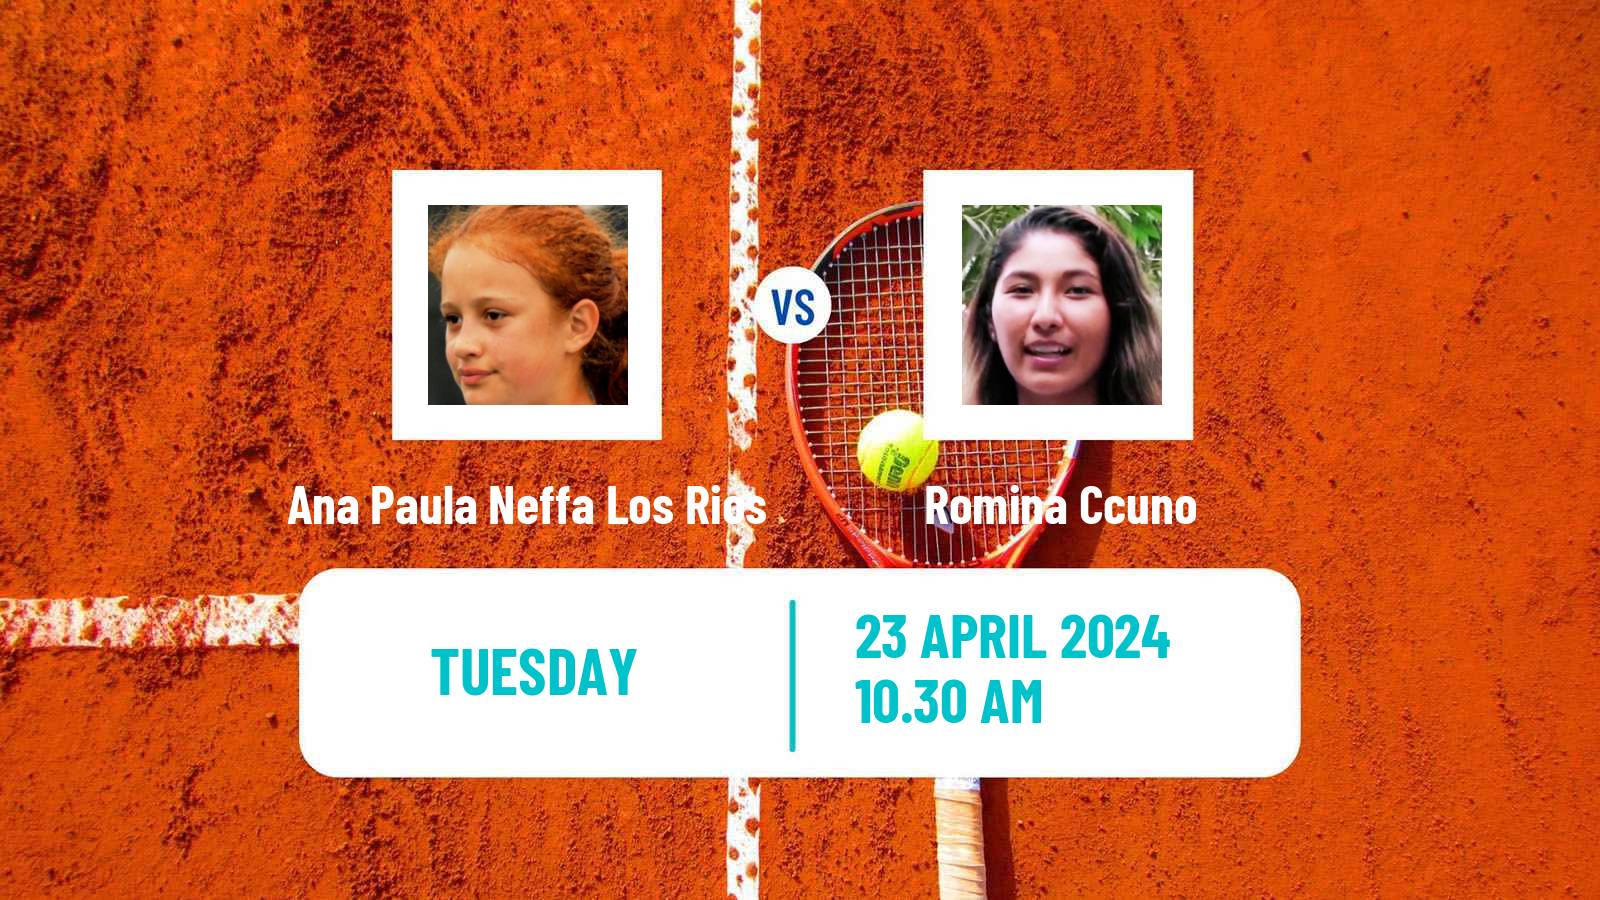 Tennis ITF W35 Mosquera Women Ana Paula Neffa Los Rios - Romina Ccuno